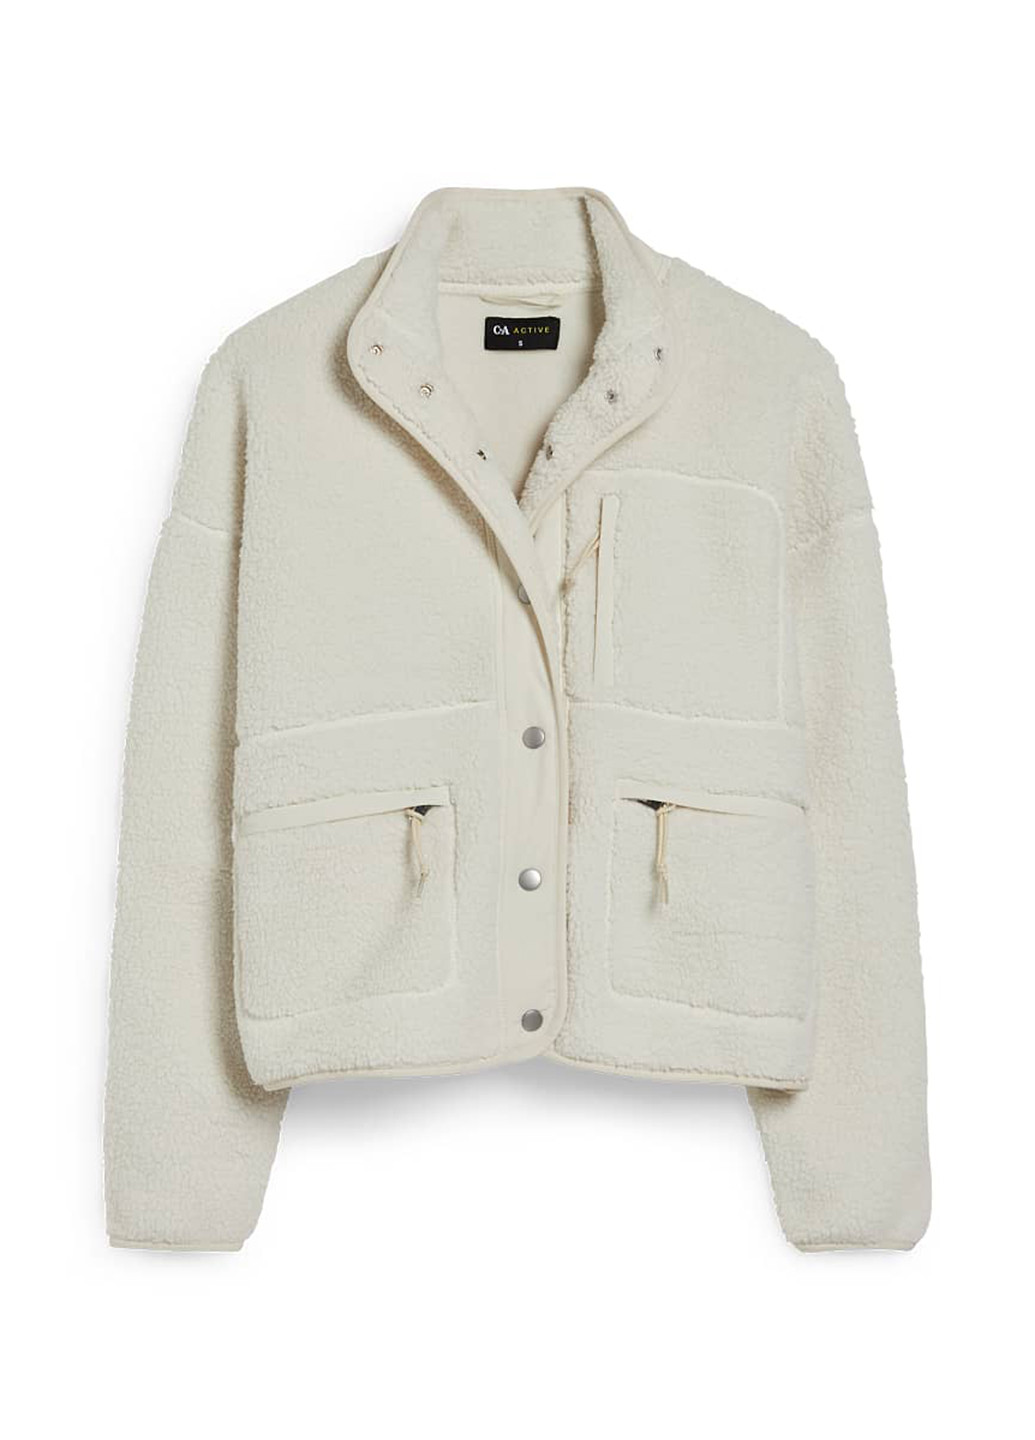 Молочная демисезонная куртка куртка-пиджак C&A